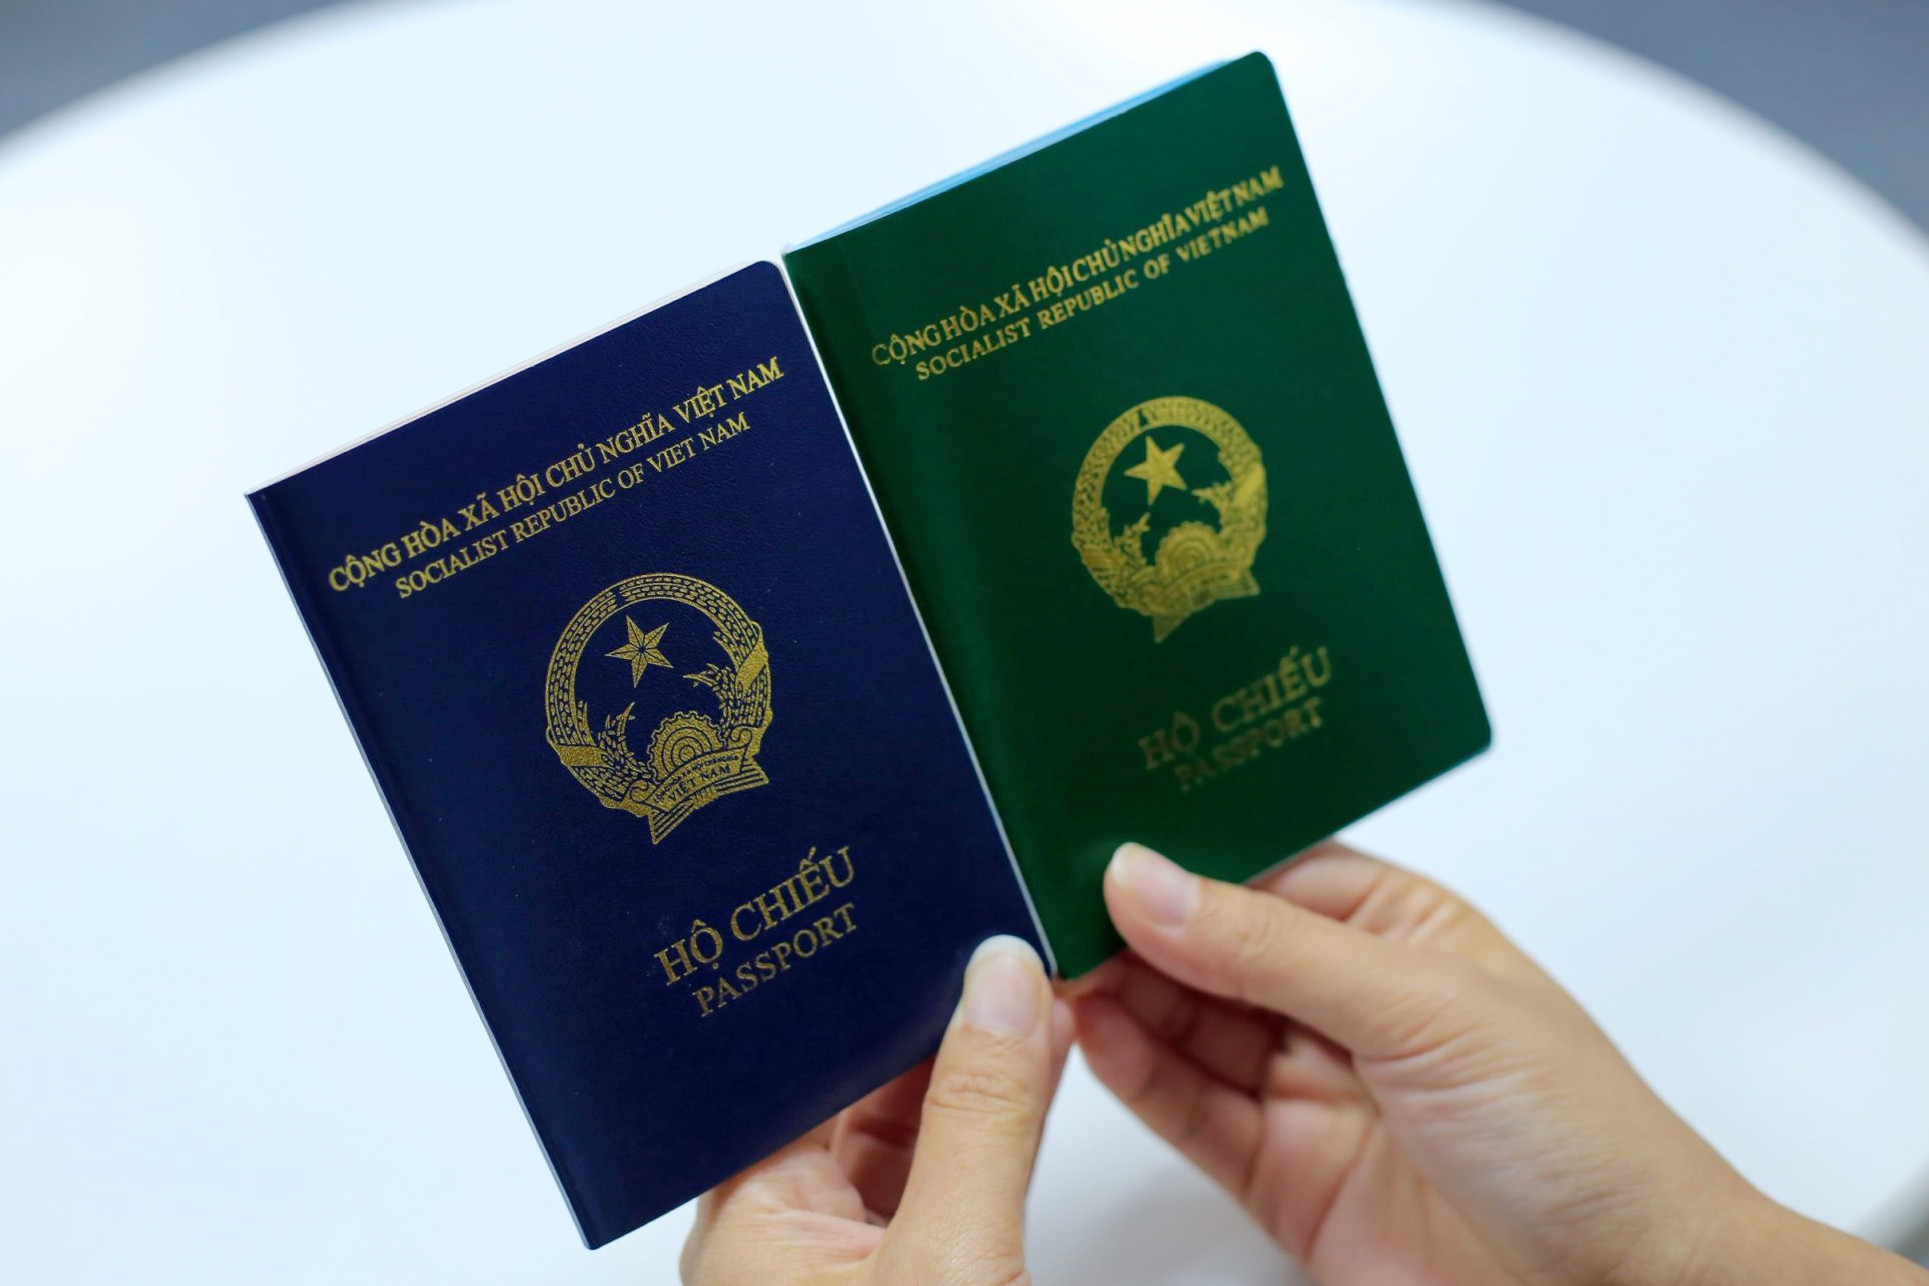 Thêm Tây Ban Nha ngừng cấp visa cho hộ chiếu Việt Nam mẫu mới